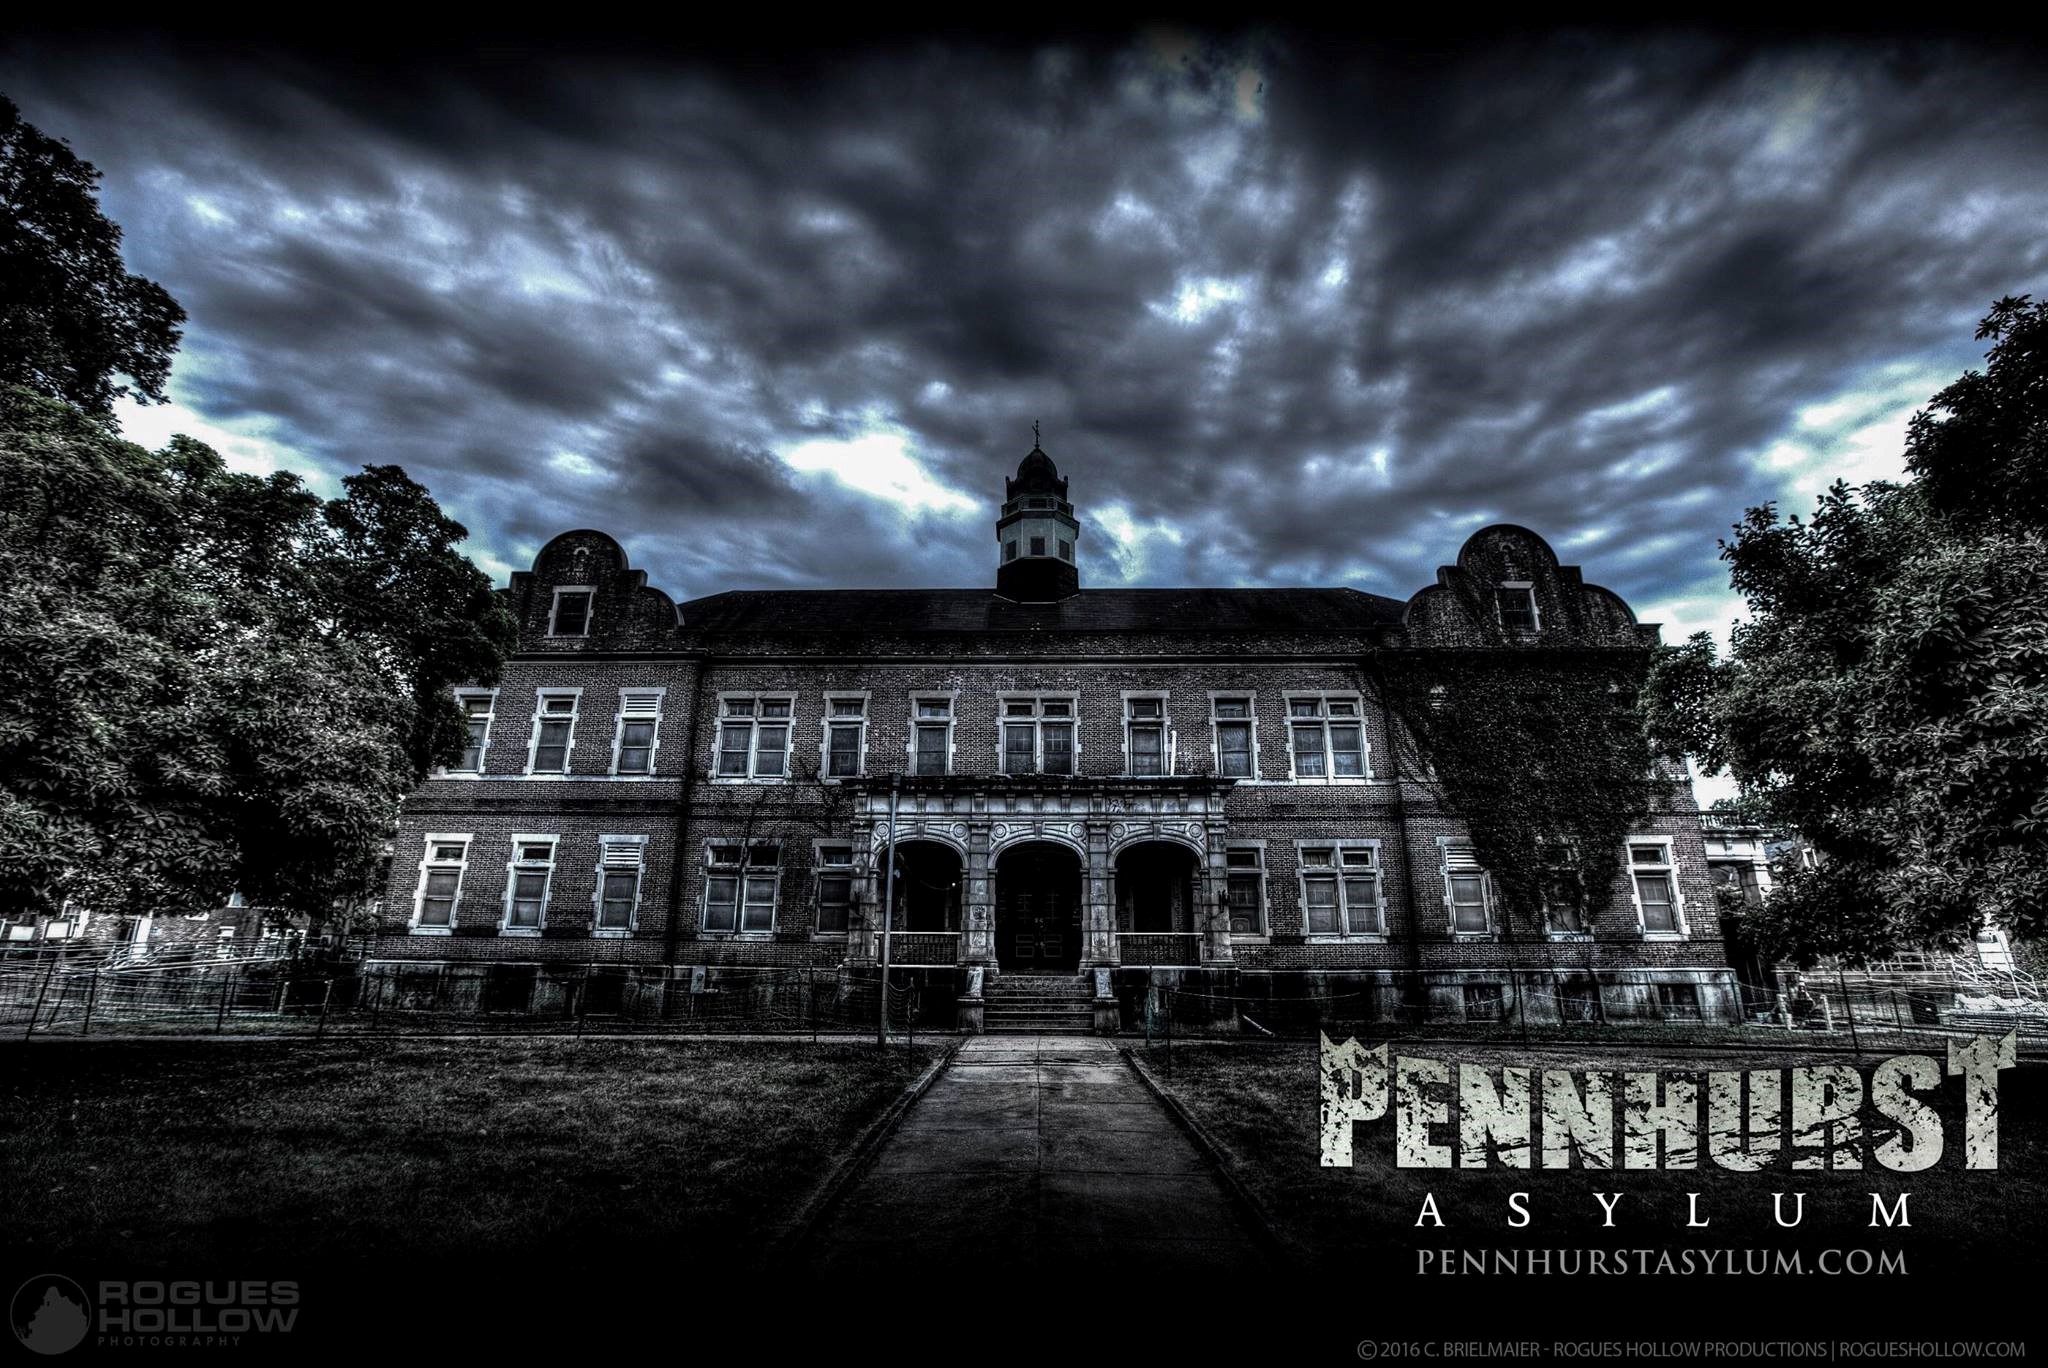 The Pennhurst Asylum in Spring City, PA